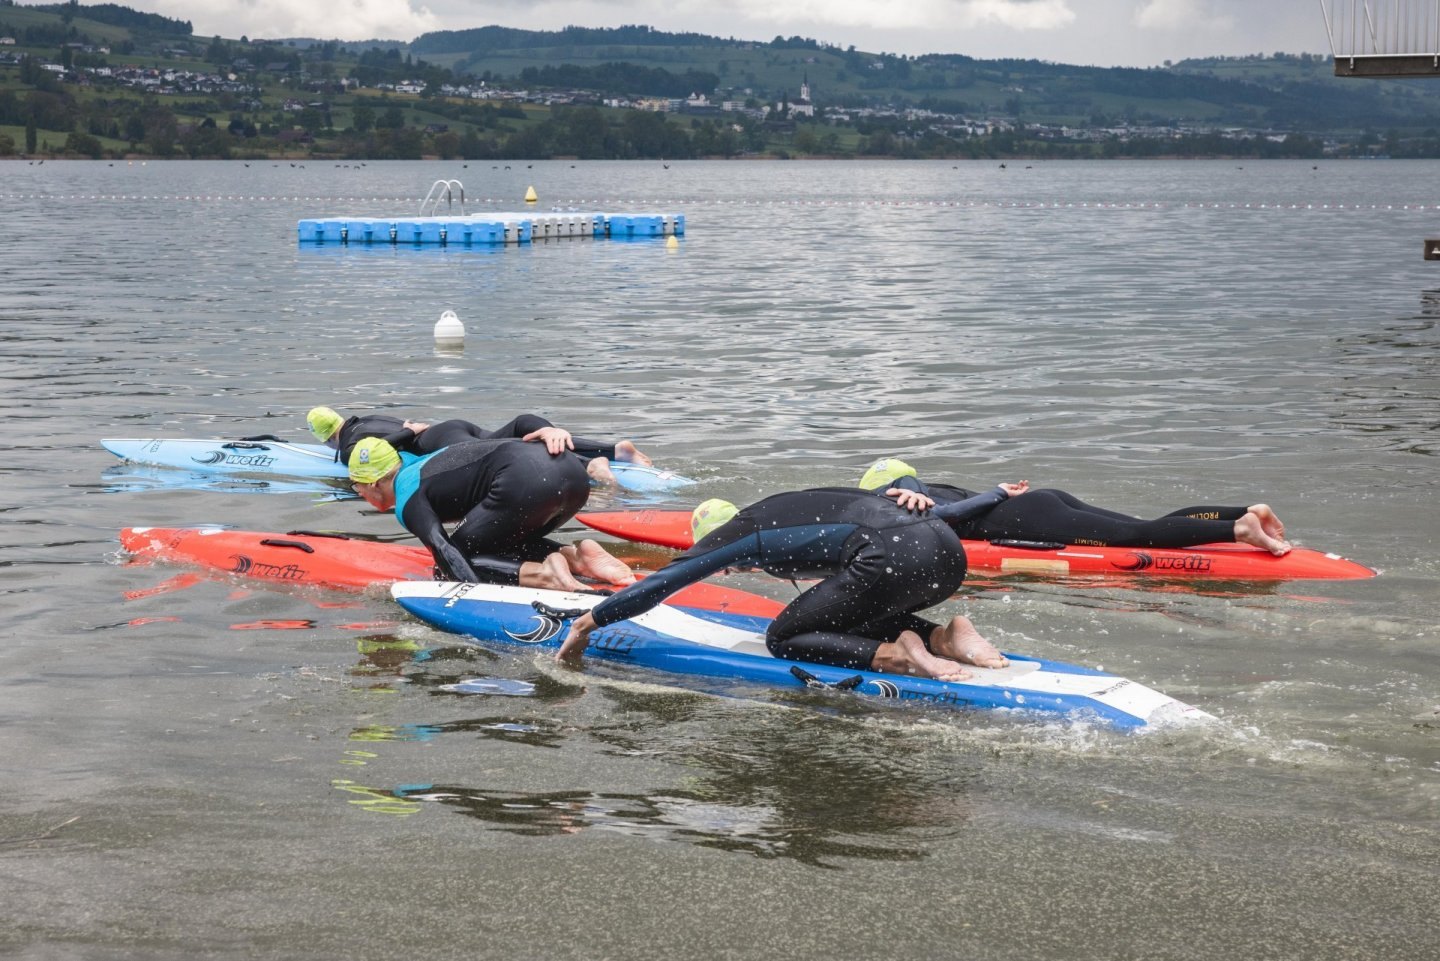 Rettungsschwimmen –Erscheinungsformen: Sich mit Paddle Board und Surfski sicher und geschickt fortbewegen